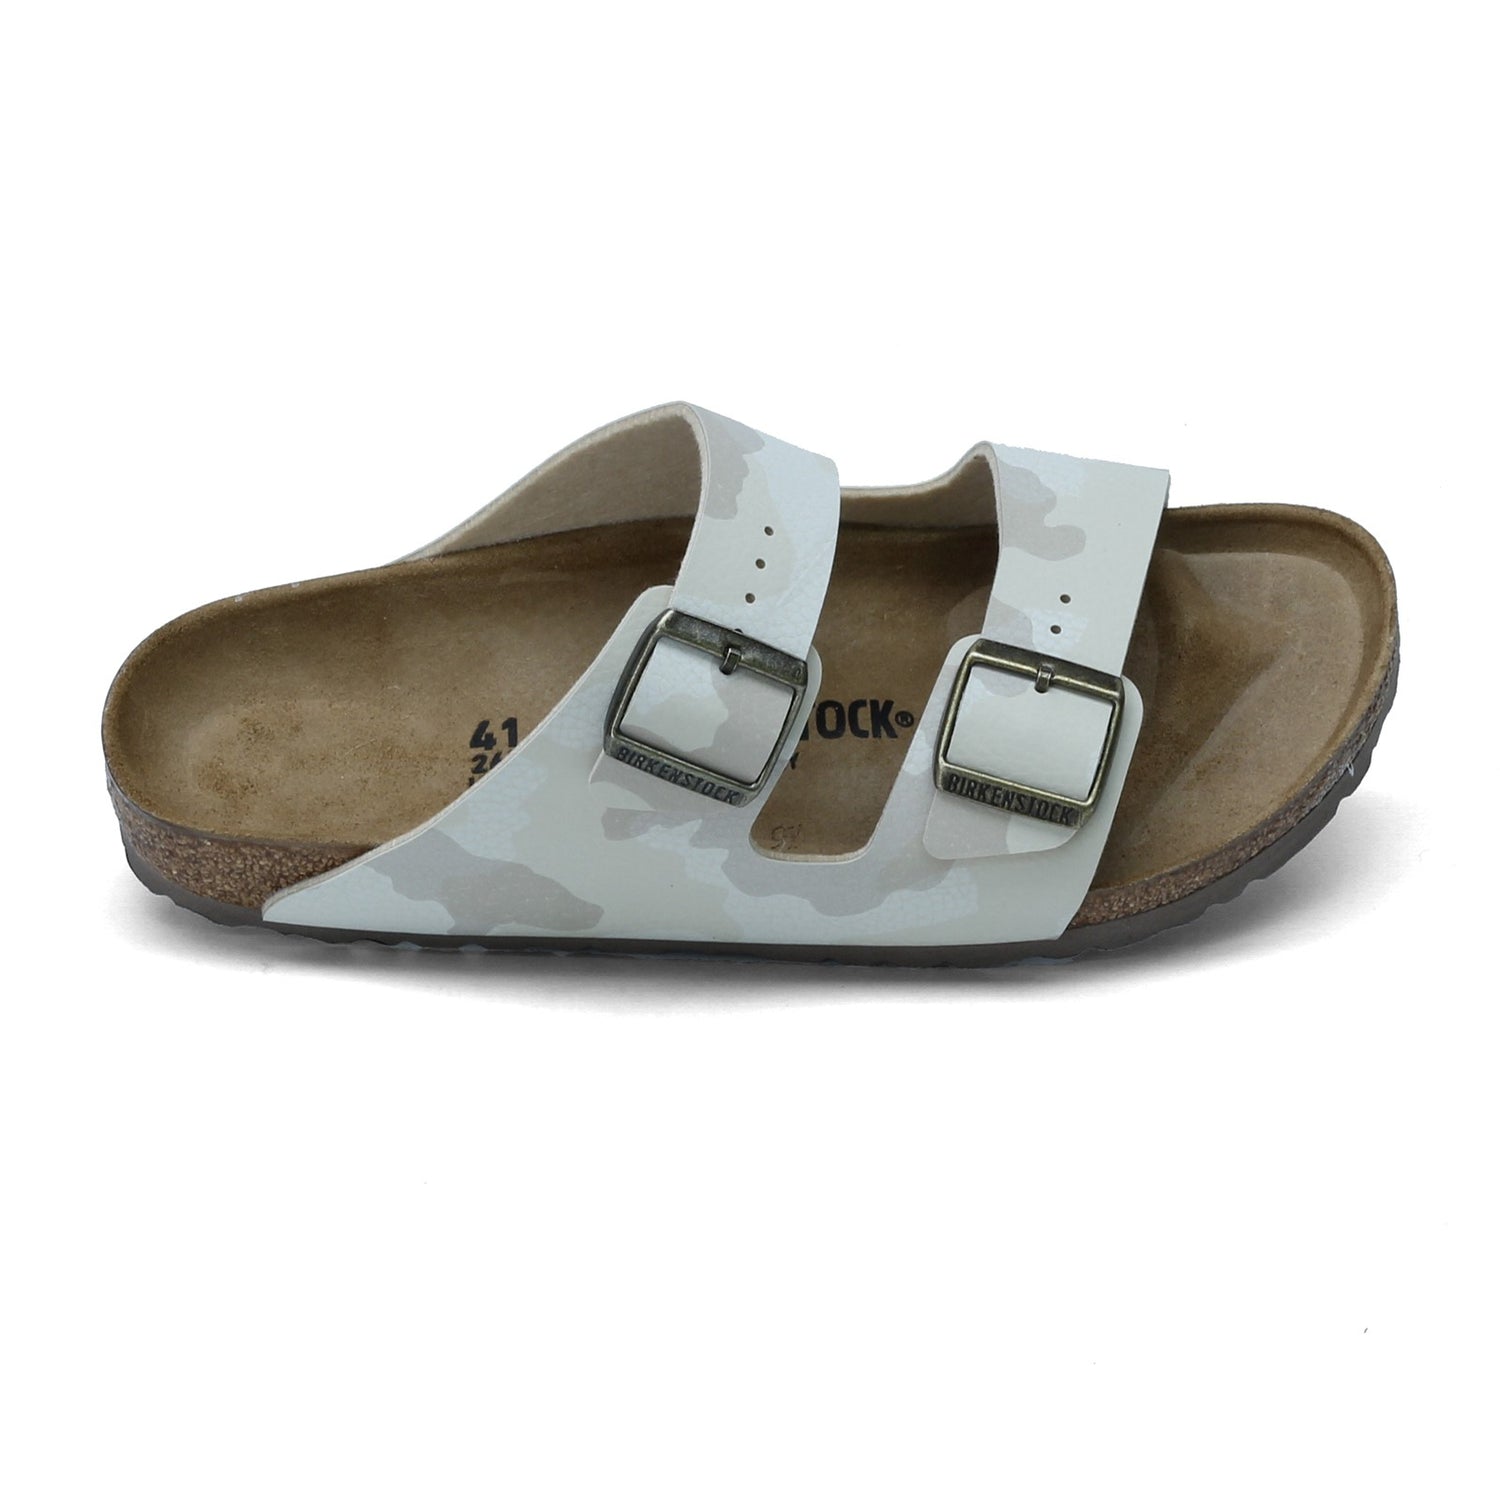 Peltz Shoes  Women's Birkenstock Arizona Birkoflor Sandal - Narrow Width BEIGE MULTI 1016 791 N